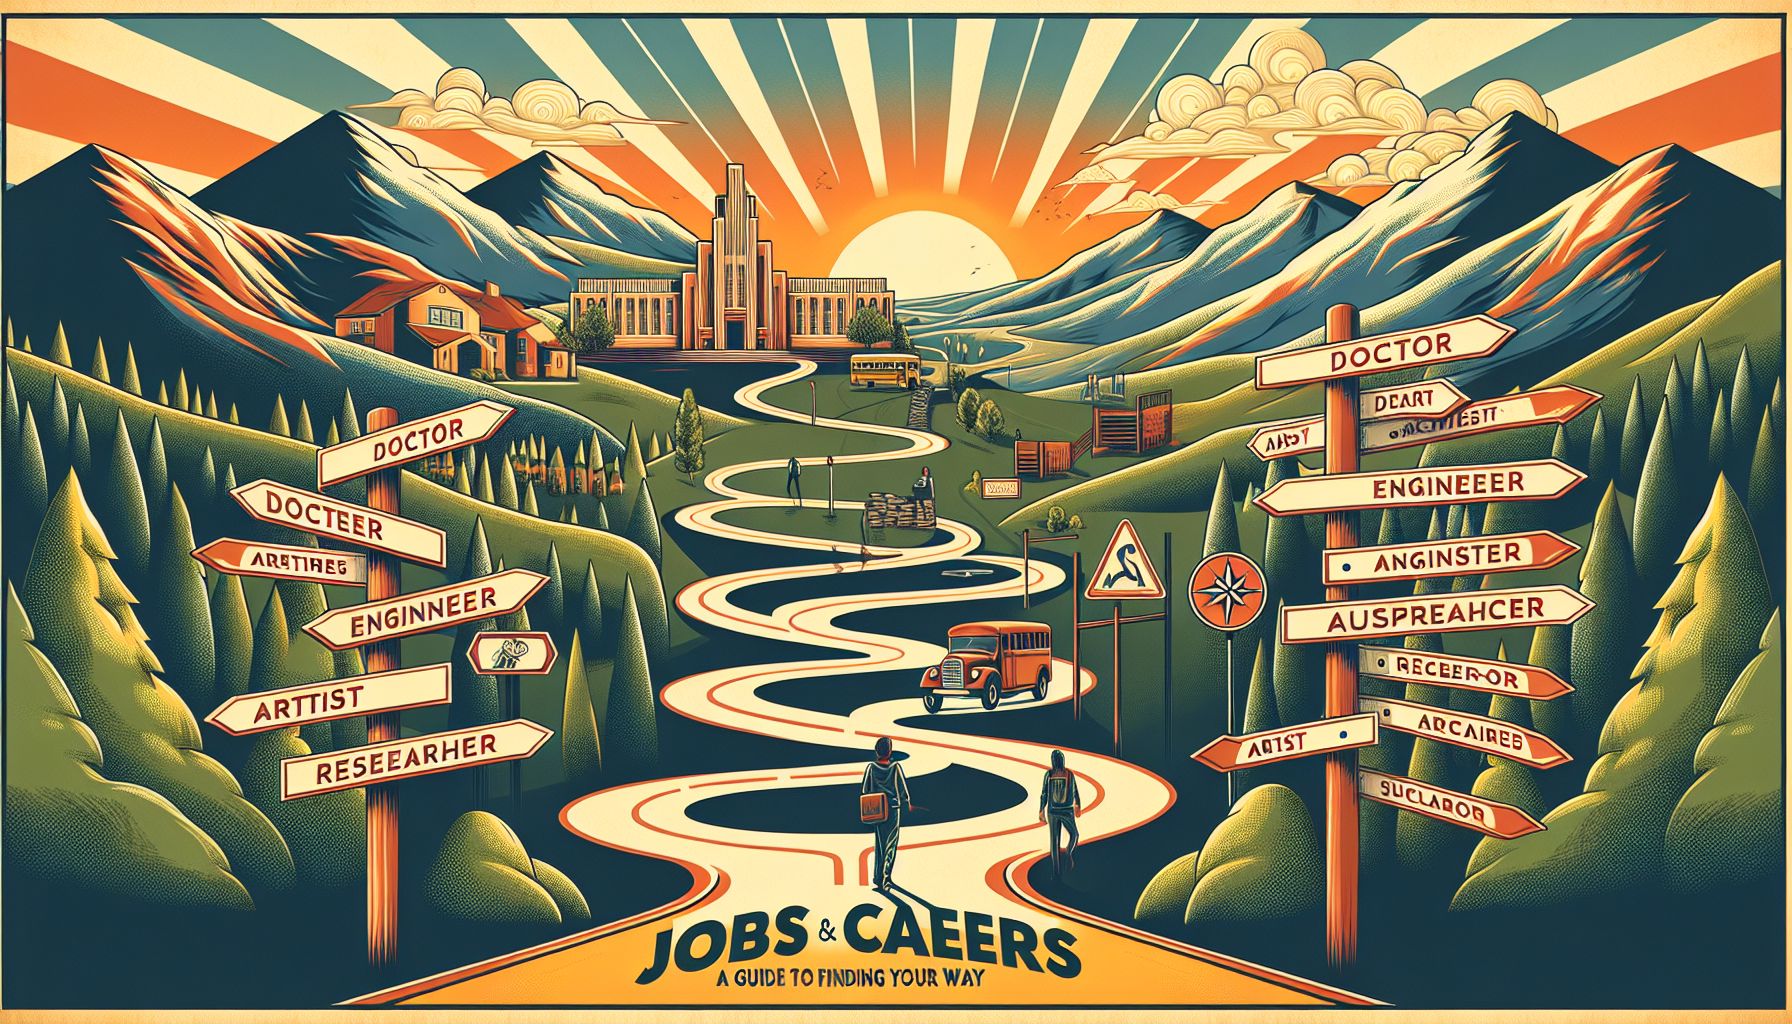 Jobs og karriere: En guide til at finde din vej